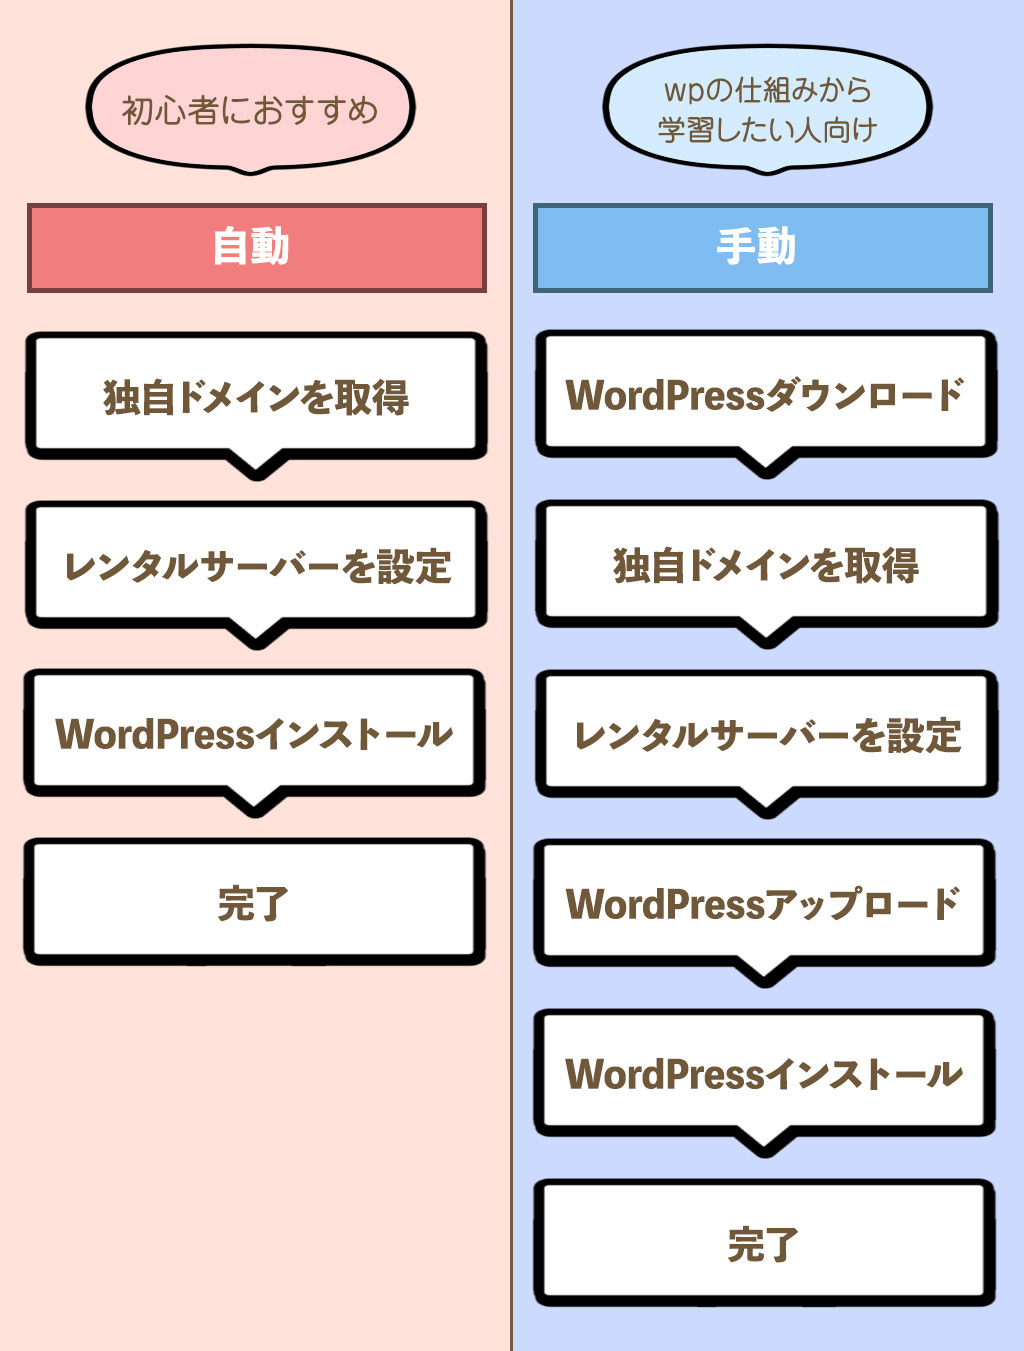 WordPressの始め方 2種類